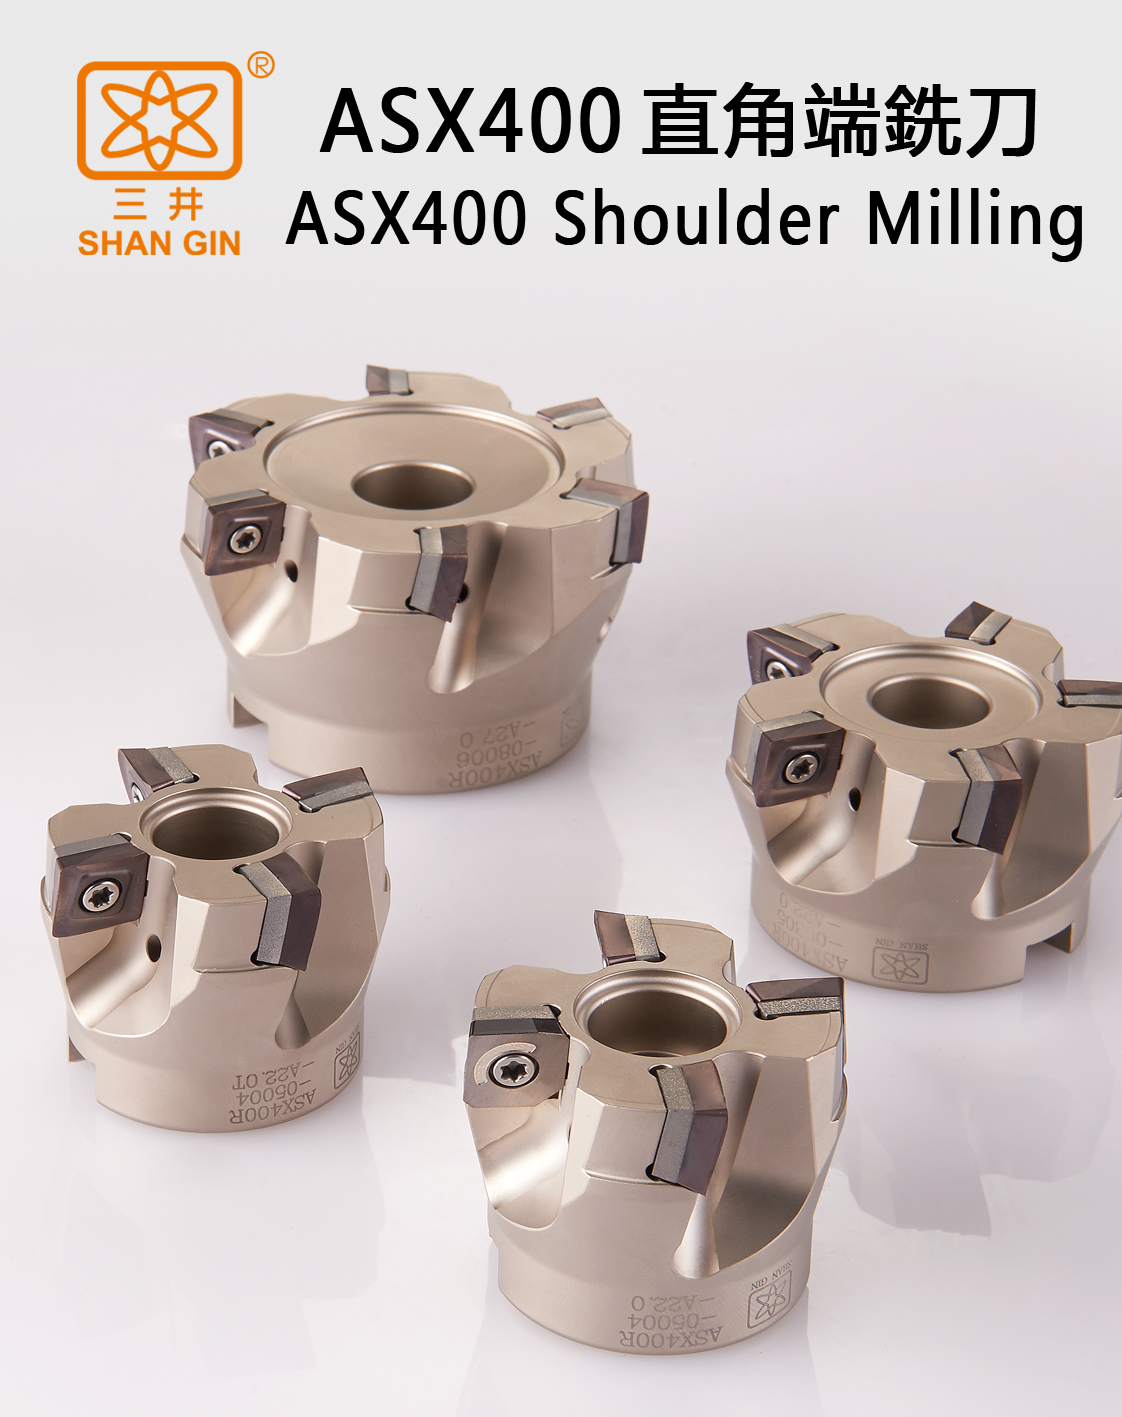 Catalog|ASX400 Shoulder Milling